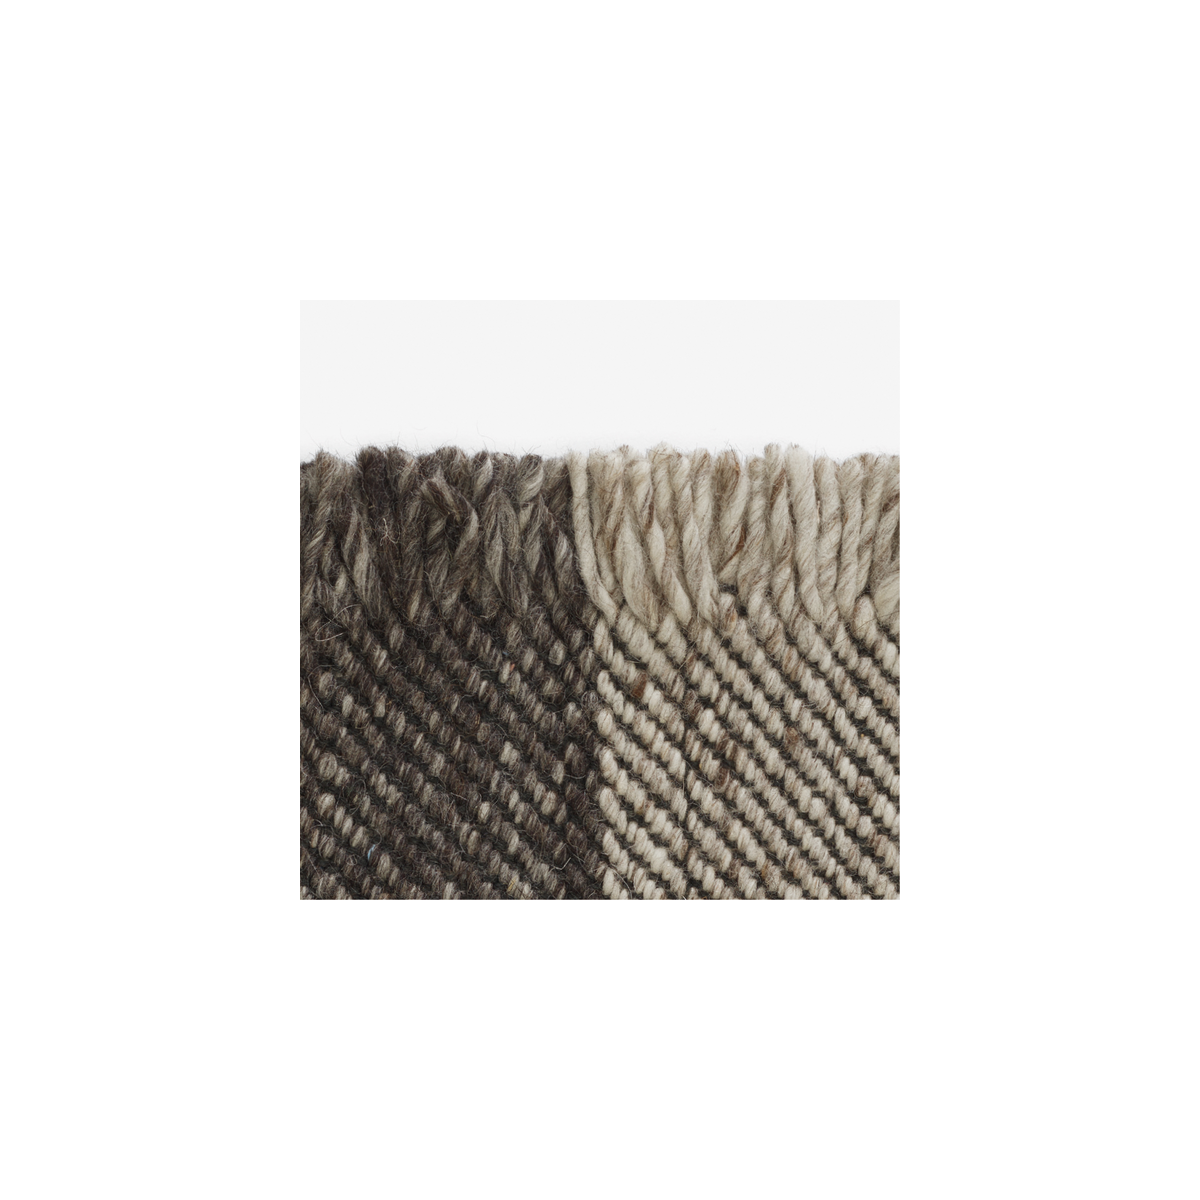 200x300cm - 0192 - Fringe rug